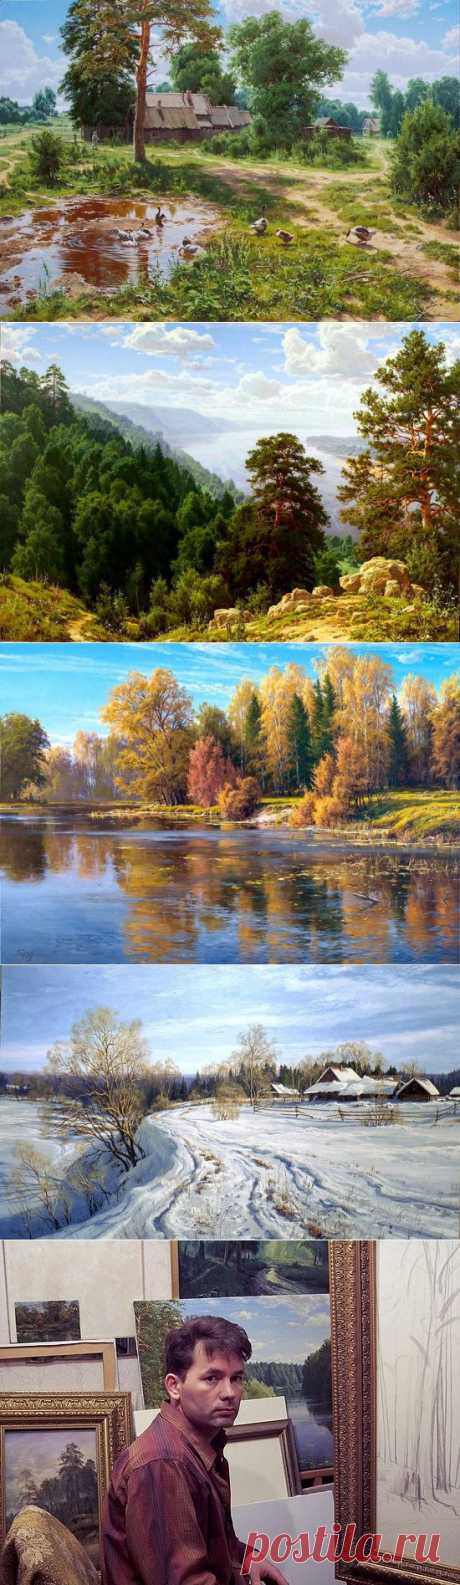 Красота русской природы в пейзажах Сергея Басова